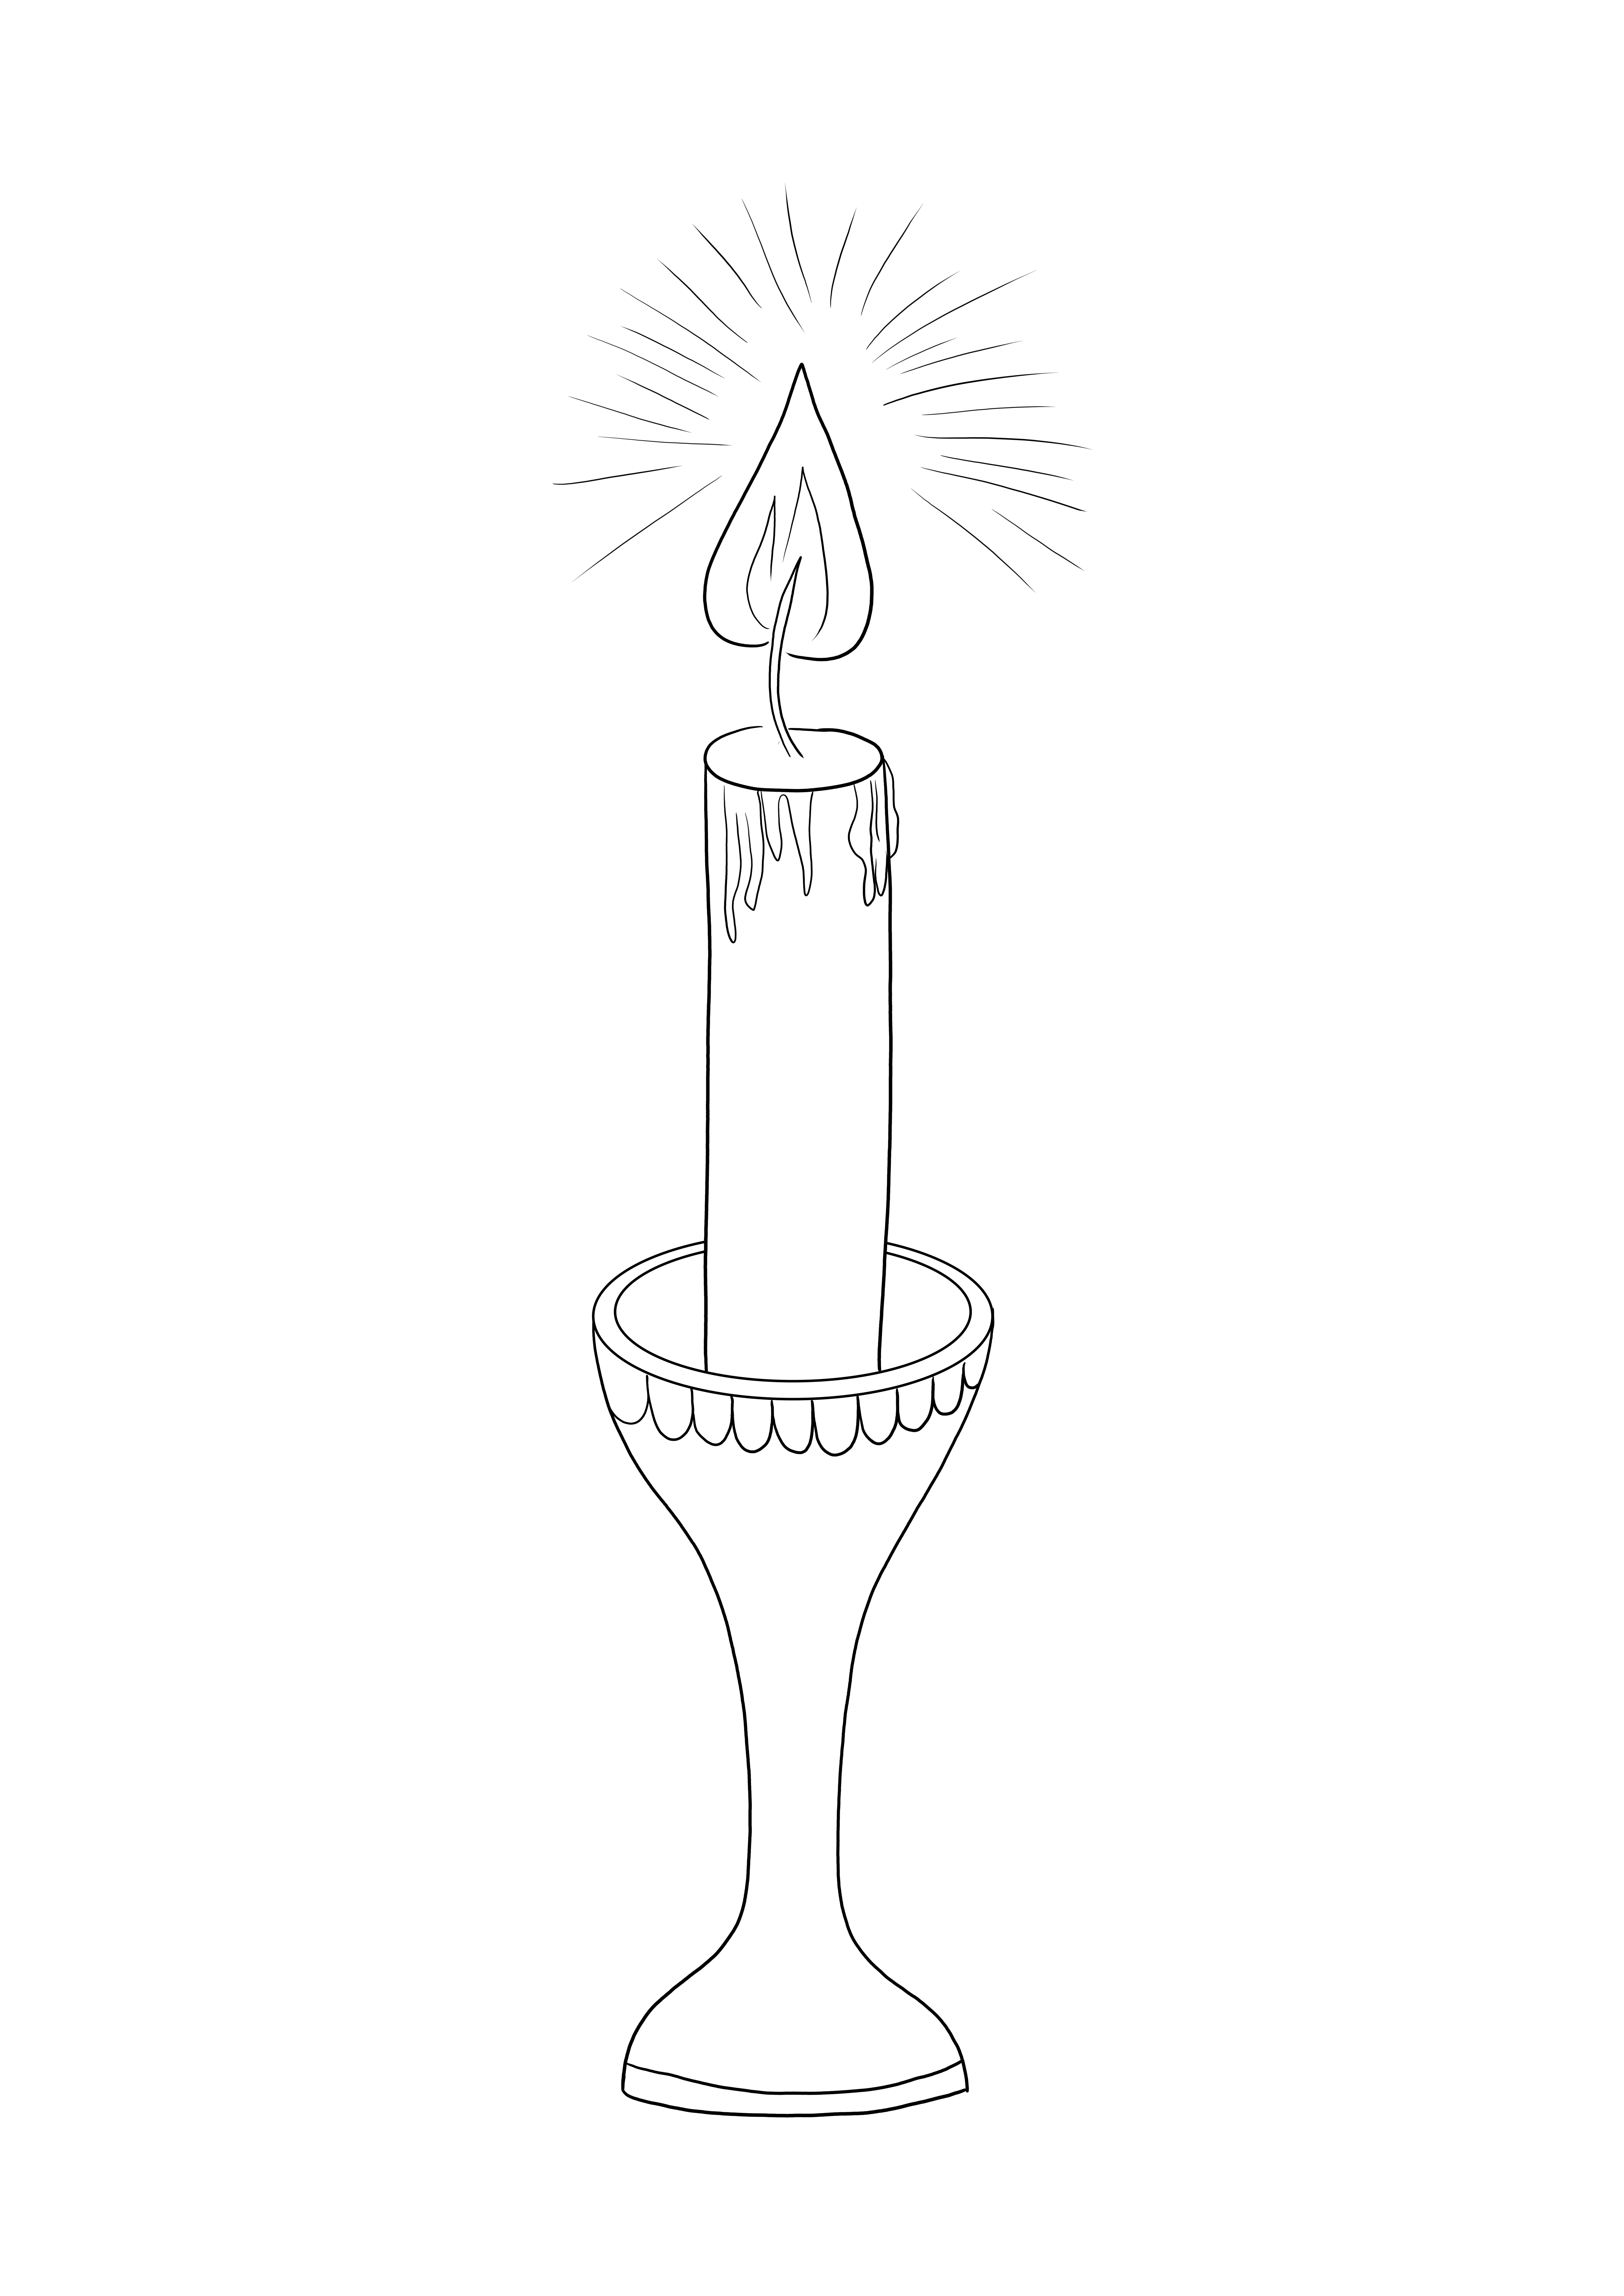 Sytytetty kynttilä, joka on valmis väritettäväksi joulun ilon juhlaa varten, ladattavaksi tai tulostettavaksi ilmaiseksi